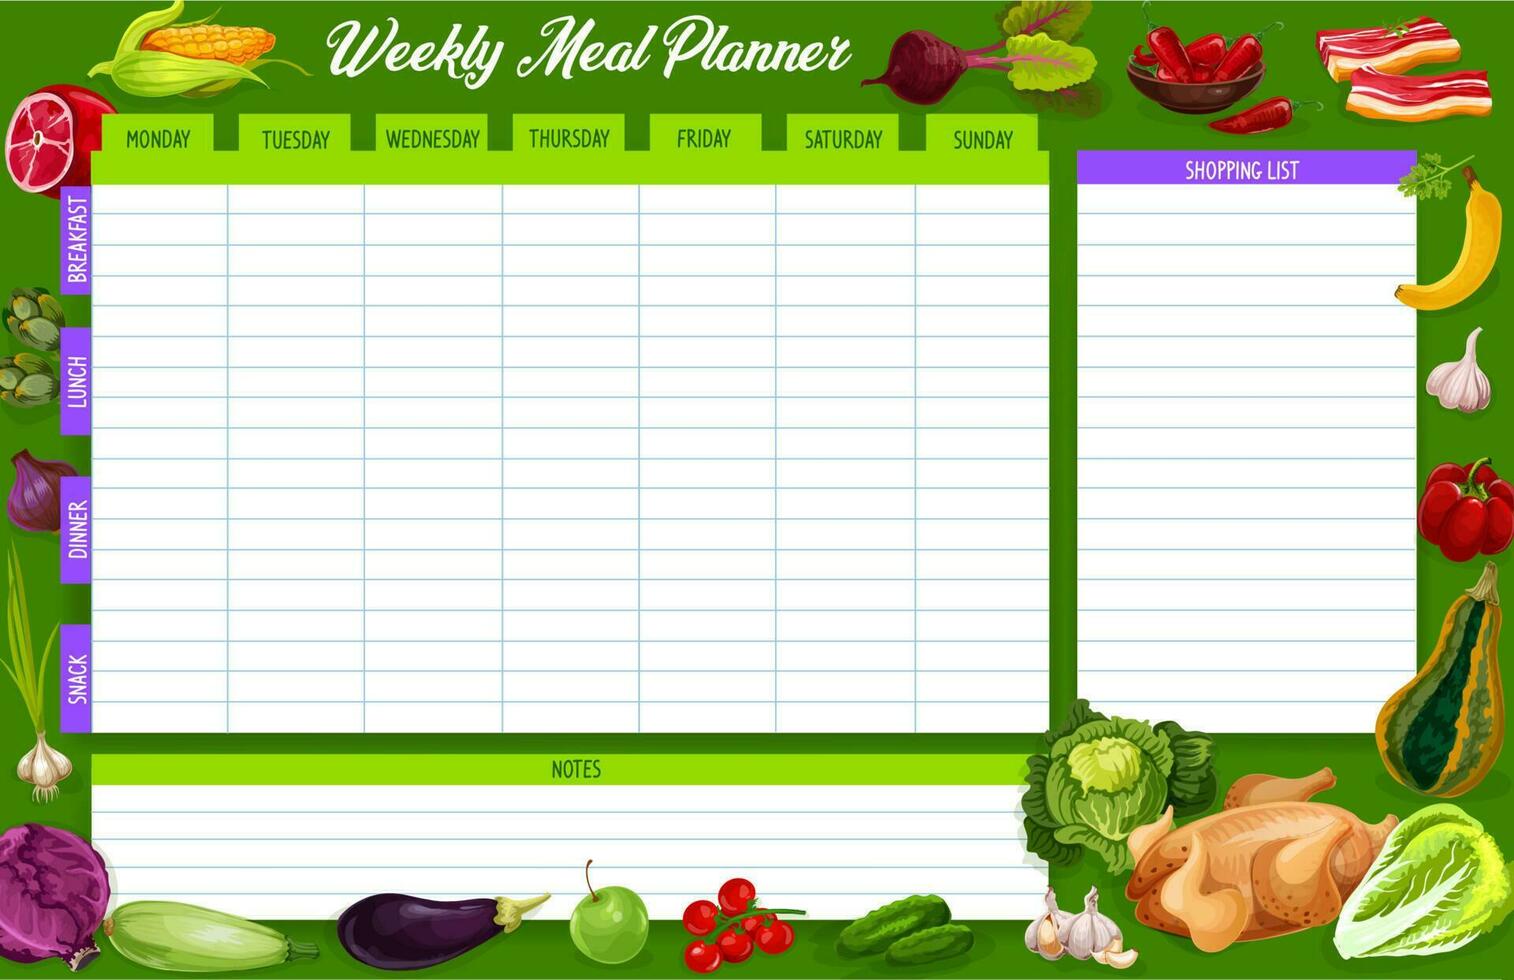 Weekly meal planner, vector food week plan diary